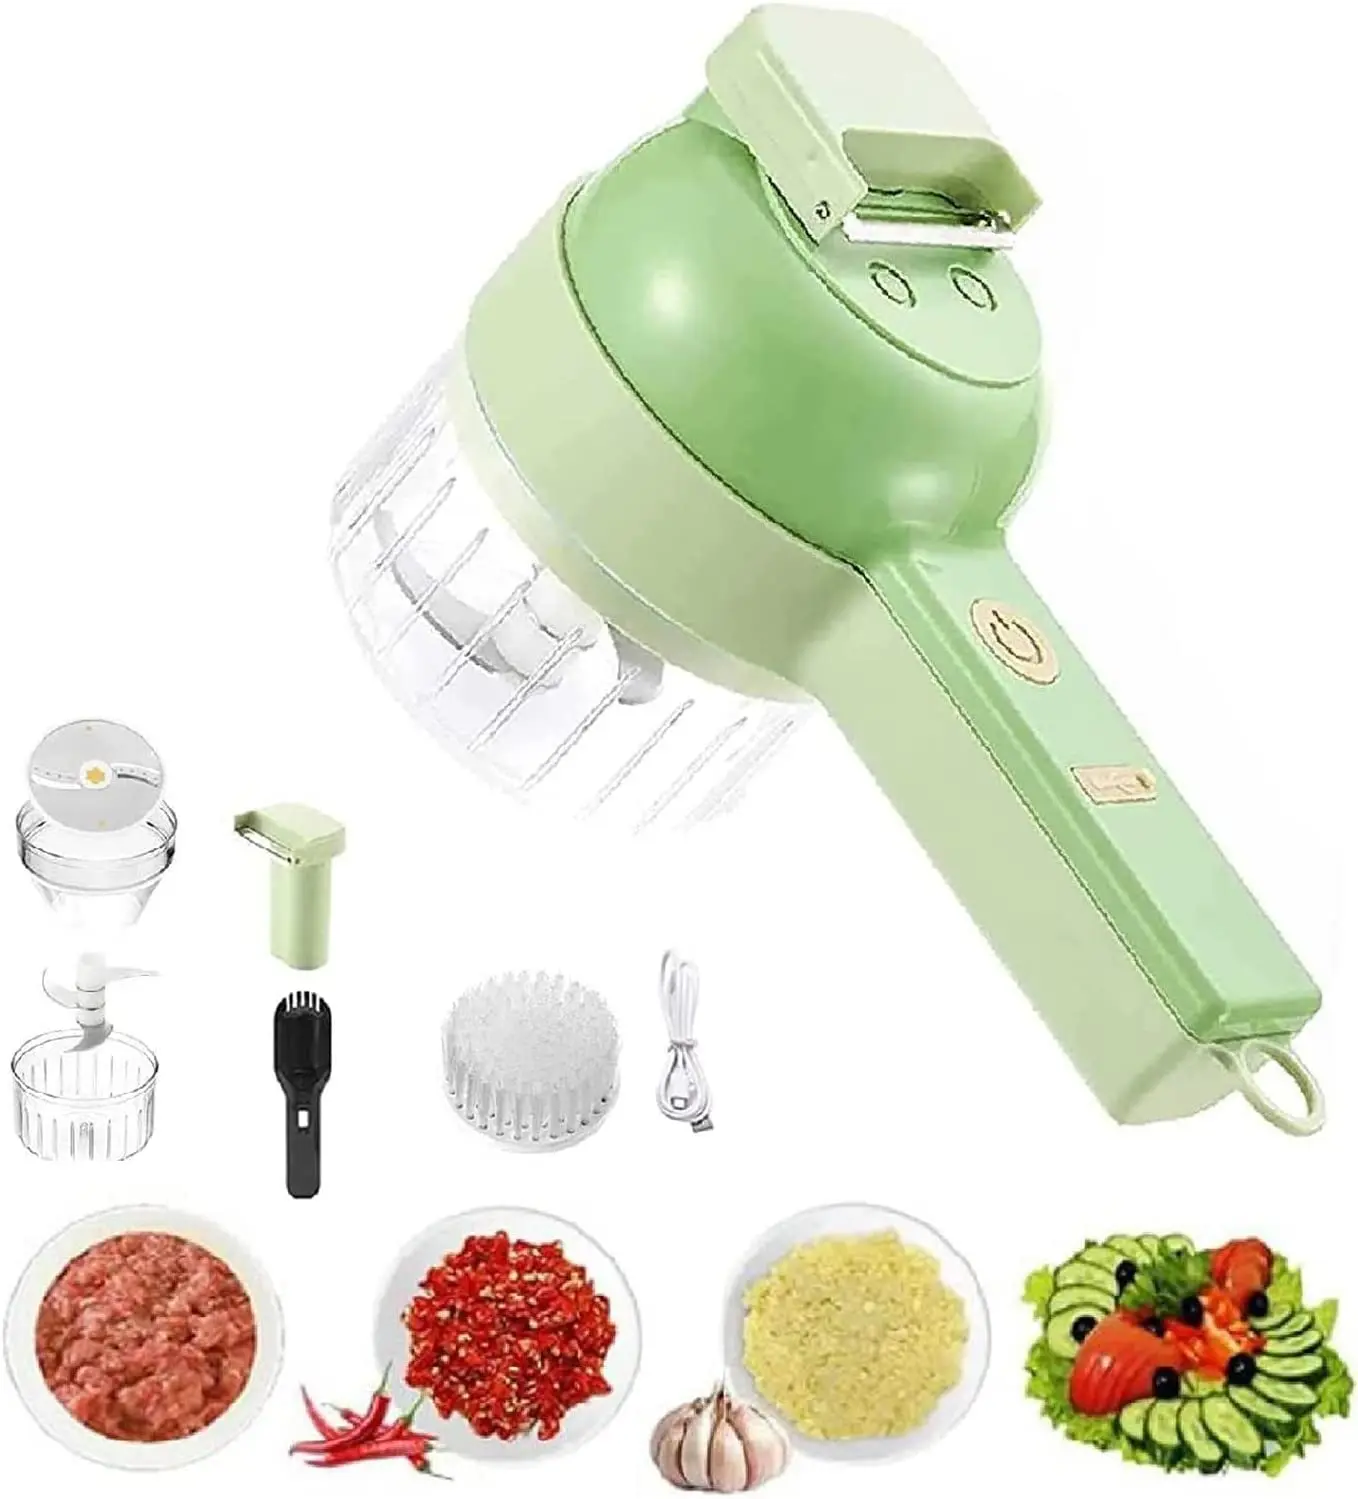 4 In 1 Handheld Elektrische Gemüse Cutter Set Mini Drahtlose Elektrische Knoblauch Schlamm Masher Lebensmittel Choppers und Dicers für Küche